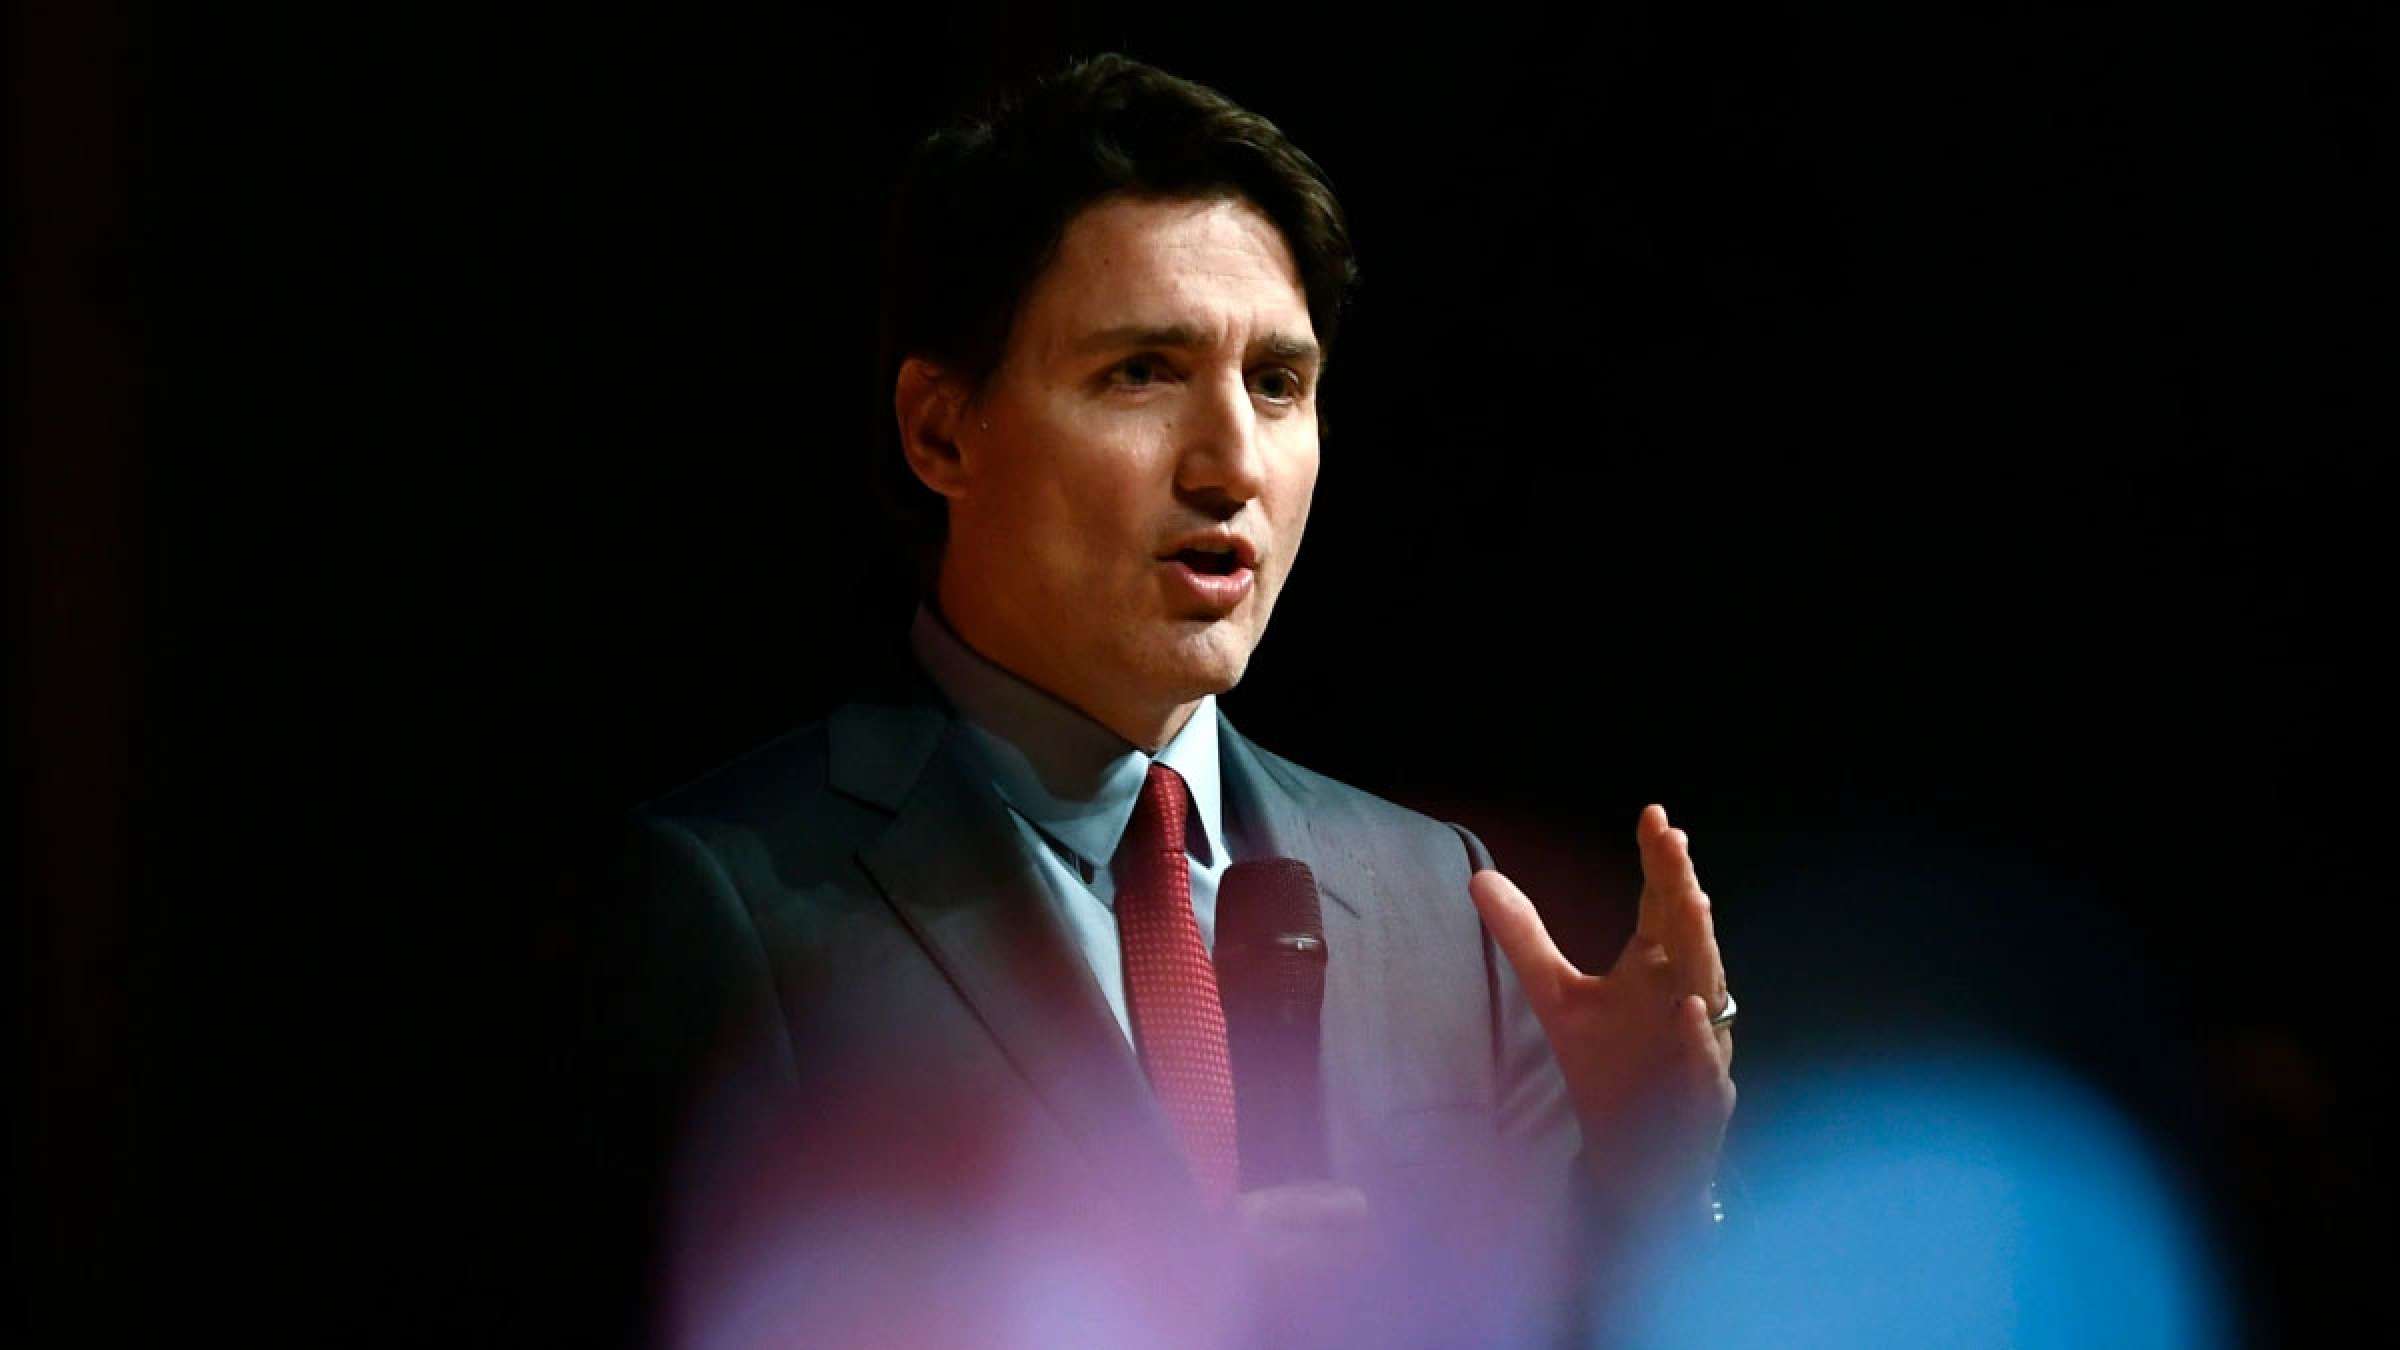 خبر-کانادا-آخرین-مصاحبه-نخست-وزیر-ترودو-سال-آینده-سخت-دولت-کمک-مستقیم